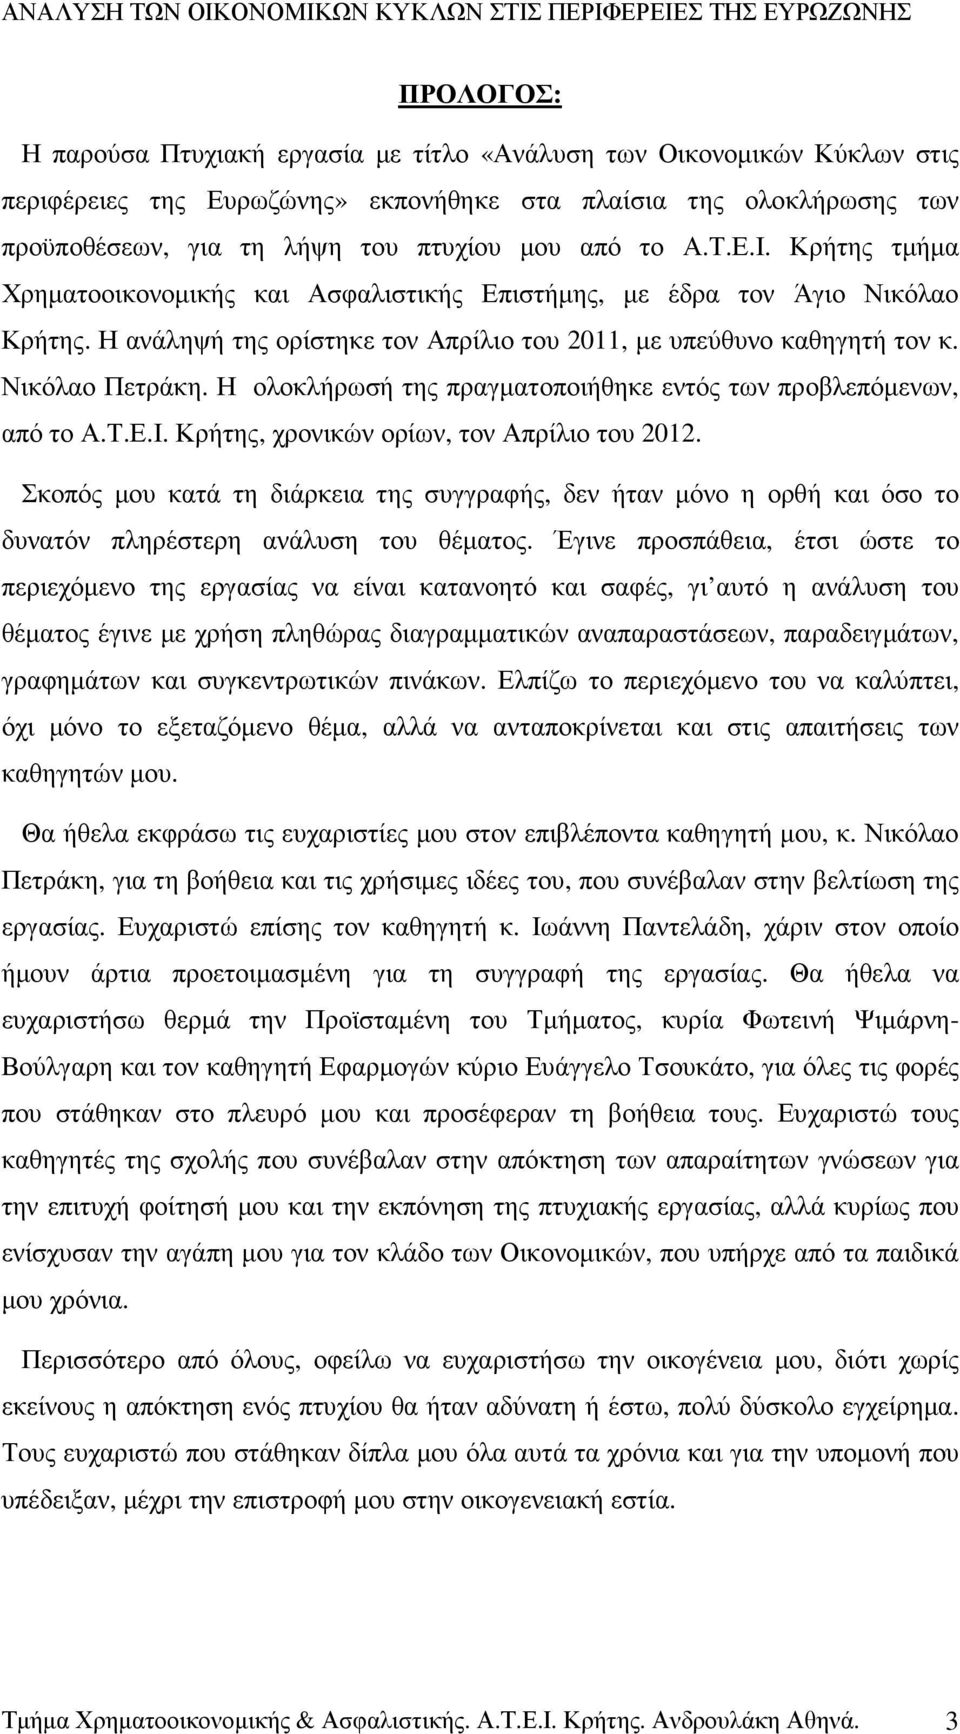 Η ολοκλήρωσή της πραγµατοποιήθηκε εντός των προβλεπόµενων, από το Α.Τ.Ε.Ι. Κρήτης, χρονικών ορίων, τον Απρίλιο του 2012.